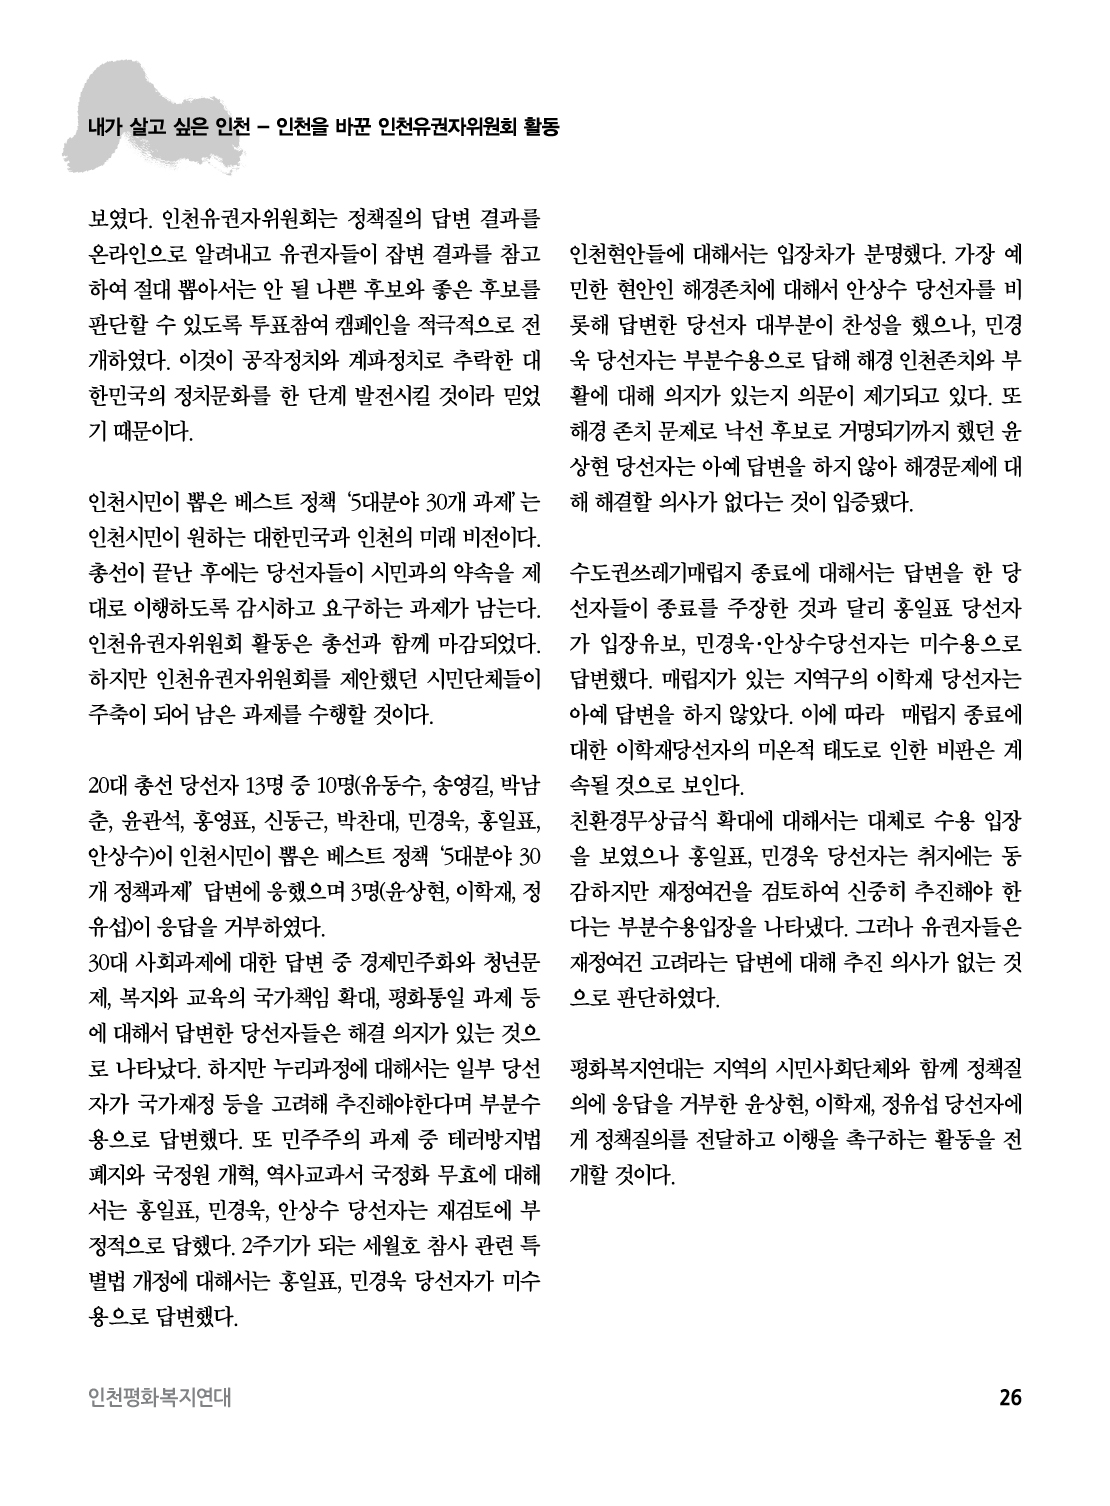 아웃라인 인천평화복지연대 소식지창간준비3호26.jpg